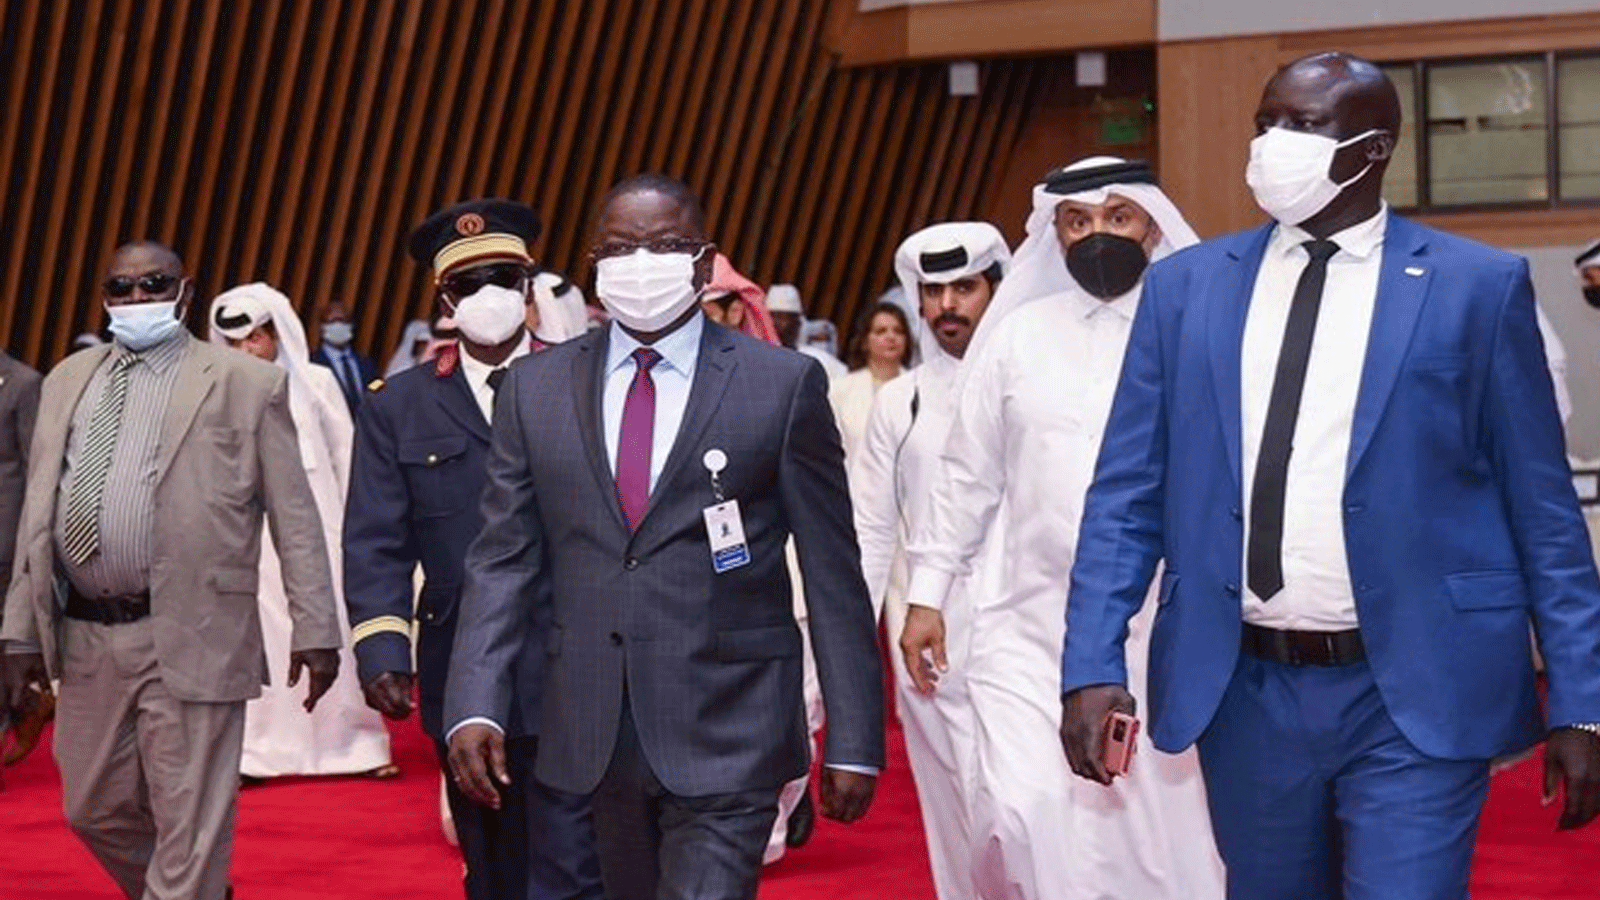  رئيس وزراء تشاد ألبرت باهيمي باداكه يصل للمشاركة في مفاوضات السلام التشادية التي بدأت في العاصمة القطرية الدوحة في 13آذار\ مارس 2022